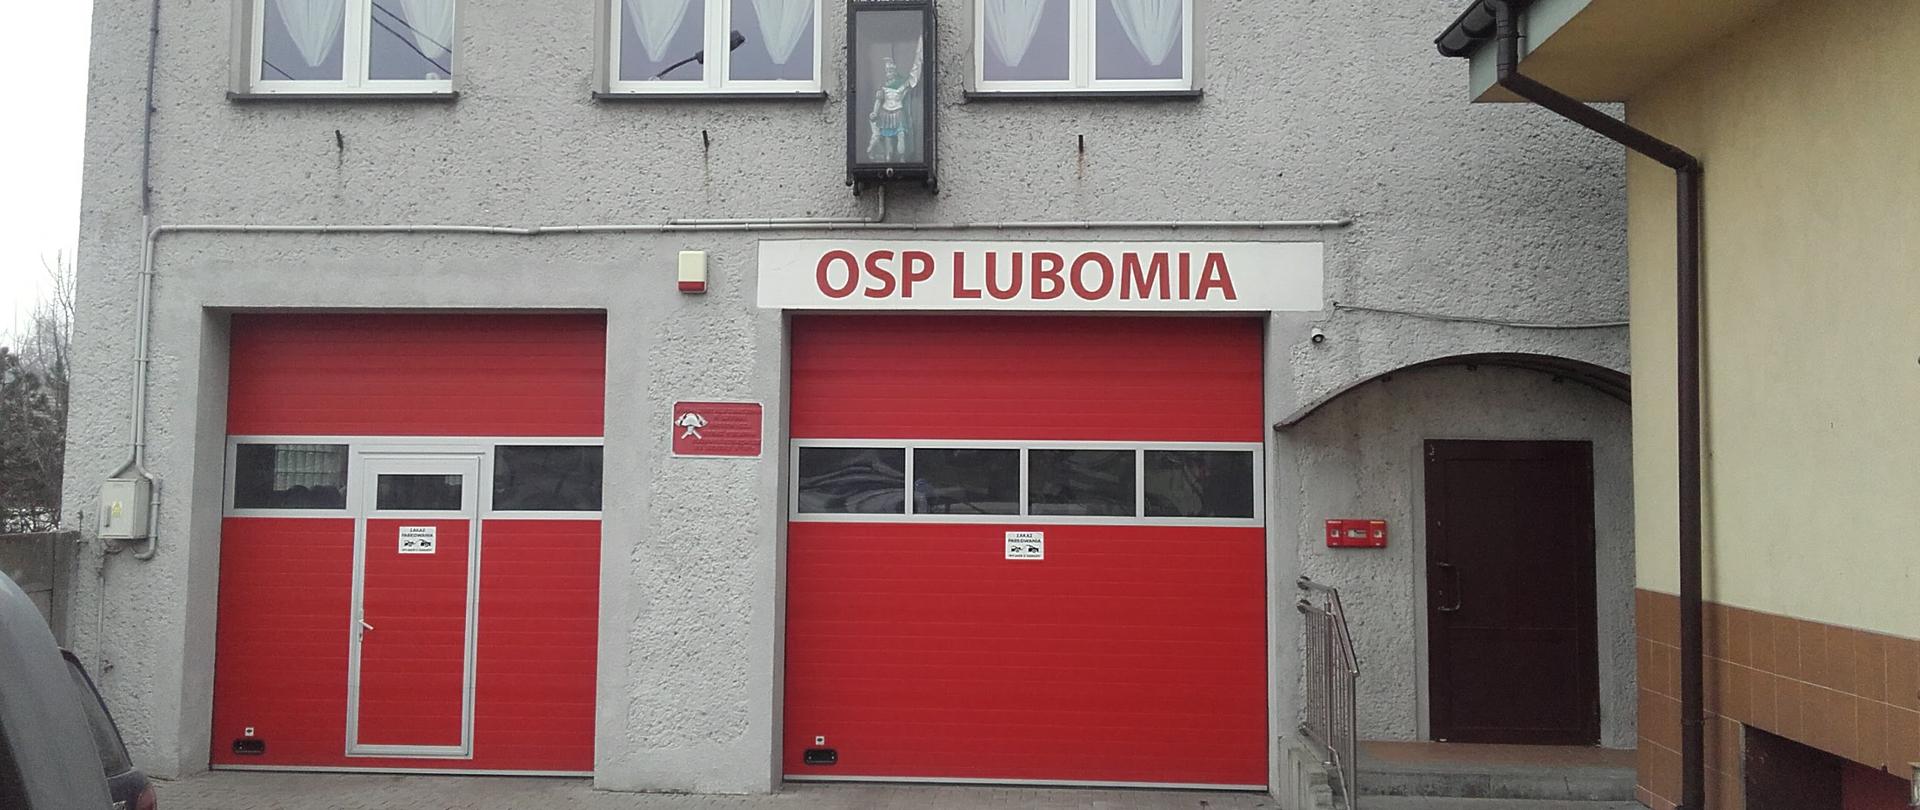 Zdjęcie prezentuje budynek jednostki OSP Lubomia